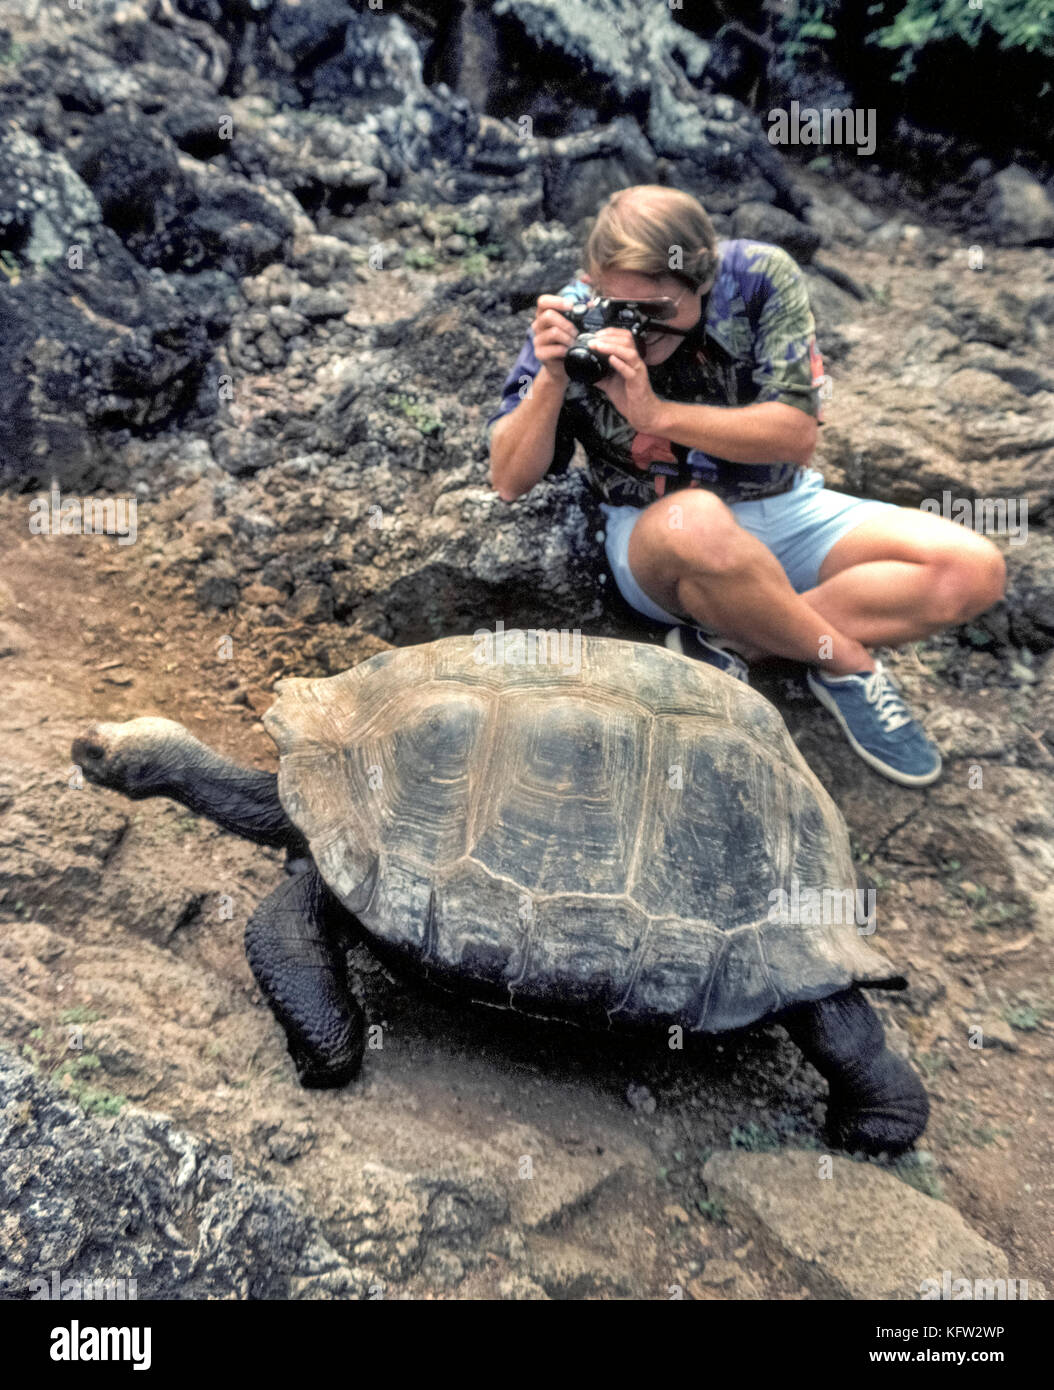 Una tortuga gigante de Galápagos (Chelonoidis nigra) se mueve lentamente pasado un turista que aprovecha la oportunidad para disparar una fotografía en primer plano de los raros reptil que es nativa de las Islas Galápagos (Archipiélago de Colón), una provincia del Ecuador en el océano Pacífico frente a la costa occidental de América del Sur. Las 20 islas y sus tortugas se hicieron famosas por el naturalista inglés Charles Darwin, quien formuló su teoría de la evolución basada en su visita a las Islas Galápagos en 1835. Hoy el 15 especies de esos enormes tortugas cuyo número se estima en 20.000 a 25.000. Foto de stock